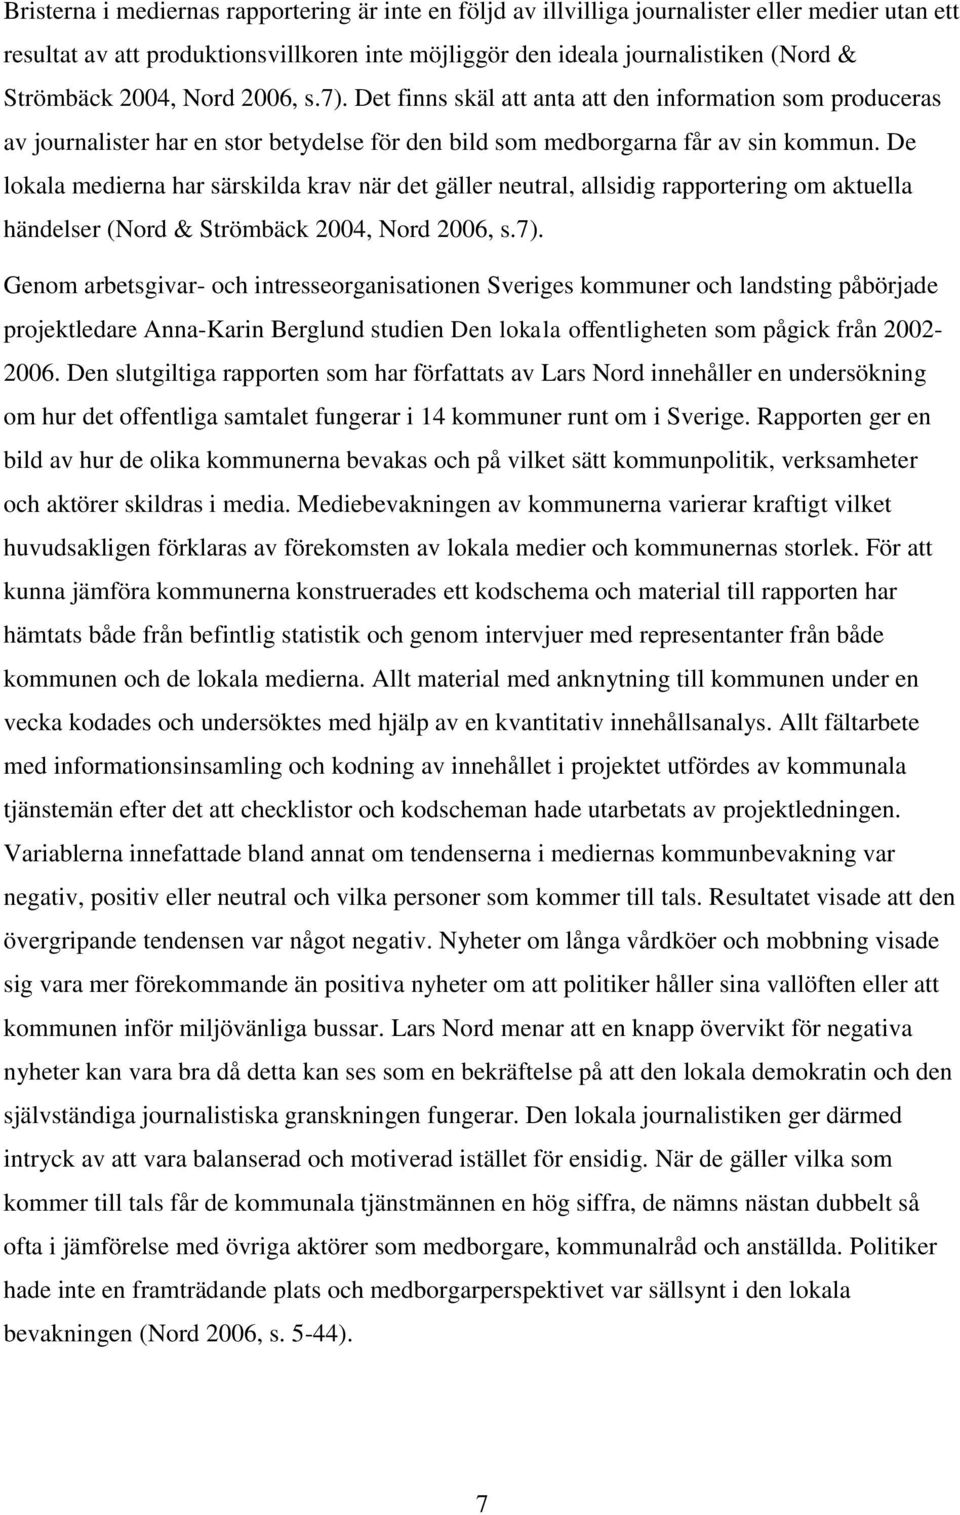 De lokala medierna har särskilda krav när det gäller neutral, allsidig rapportering om aktuella händelser (Nord & Strömbäck 2004, Nord 2006, s.7).